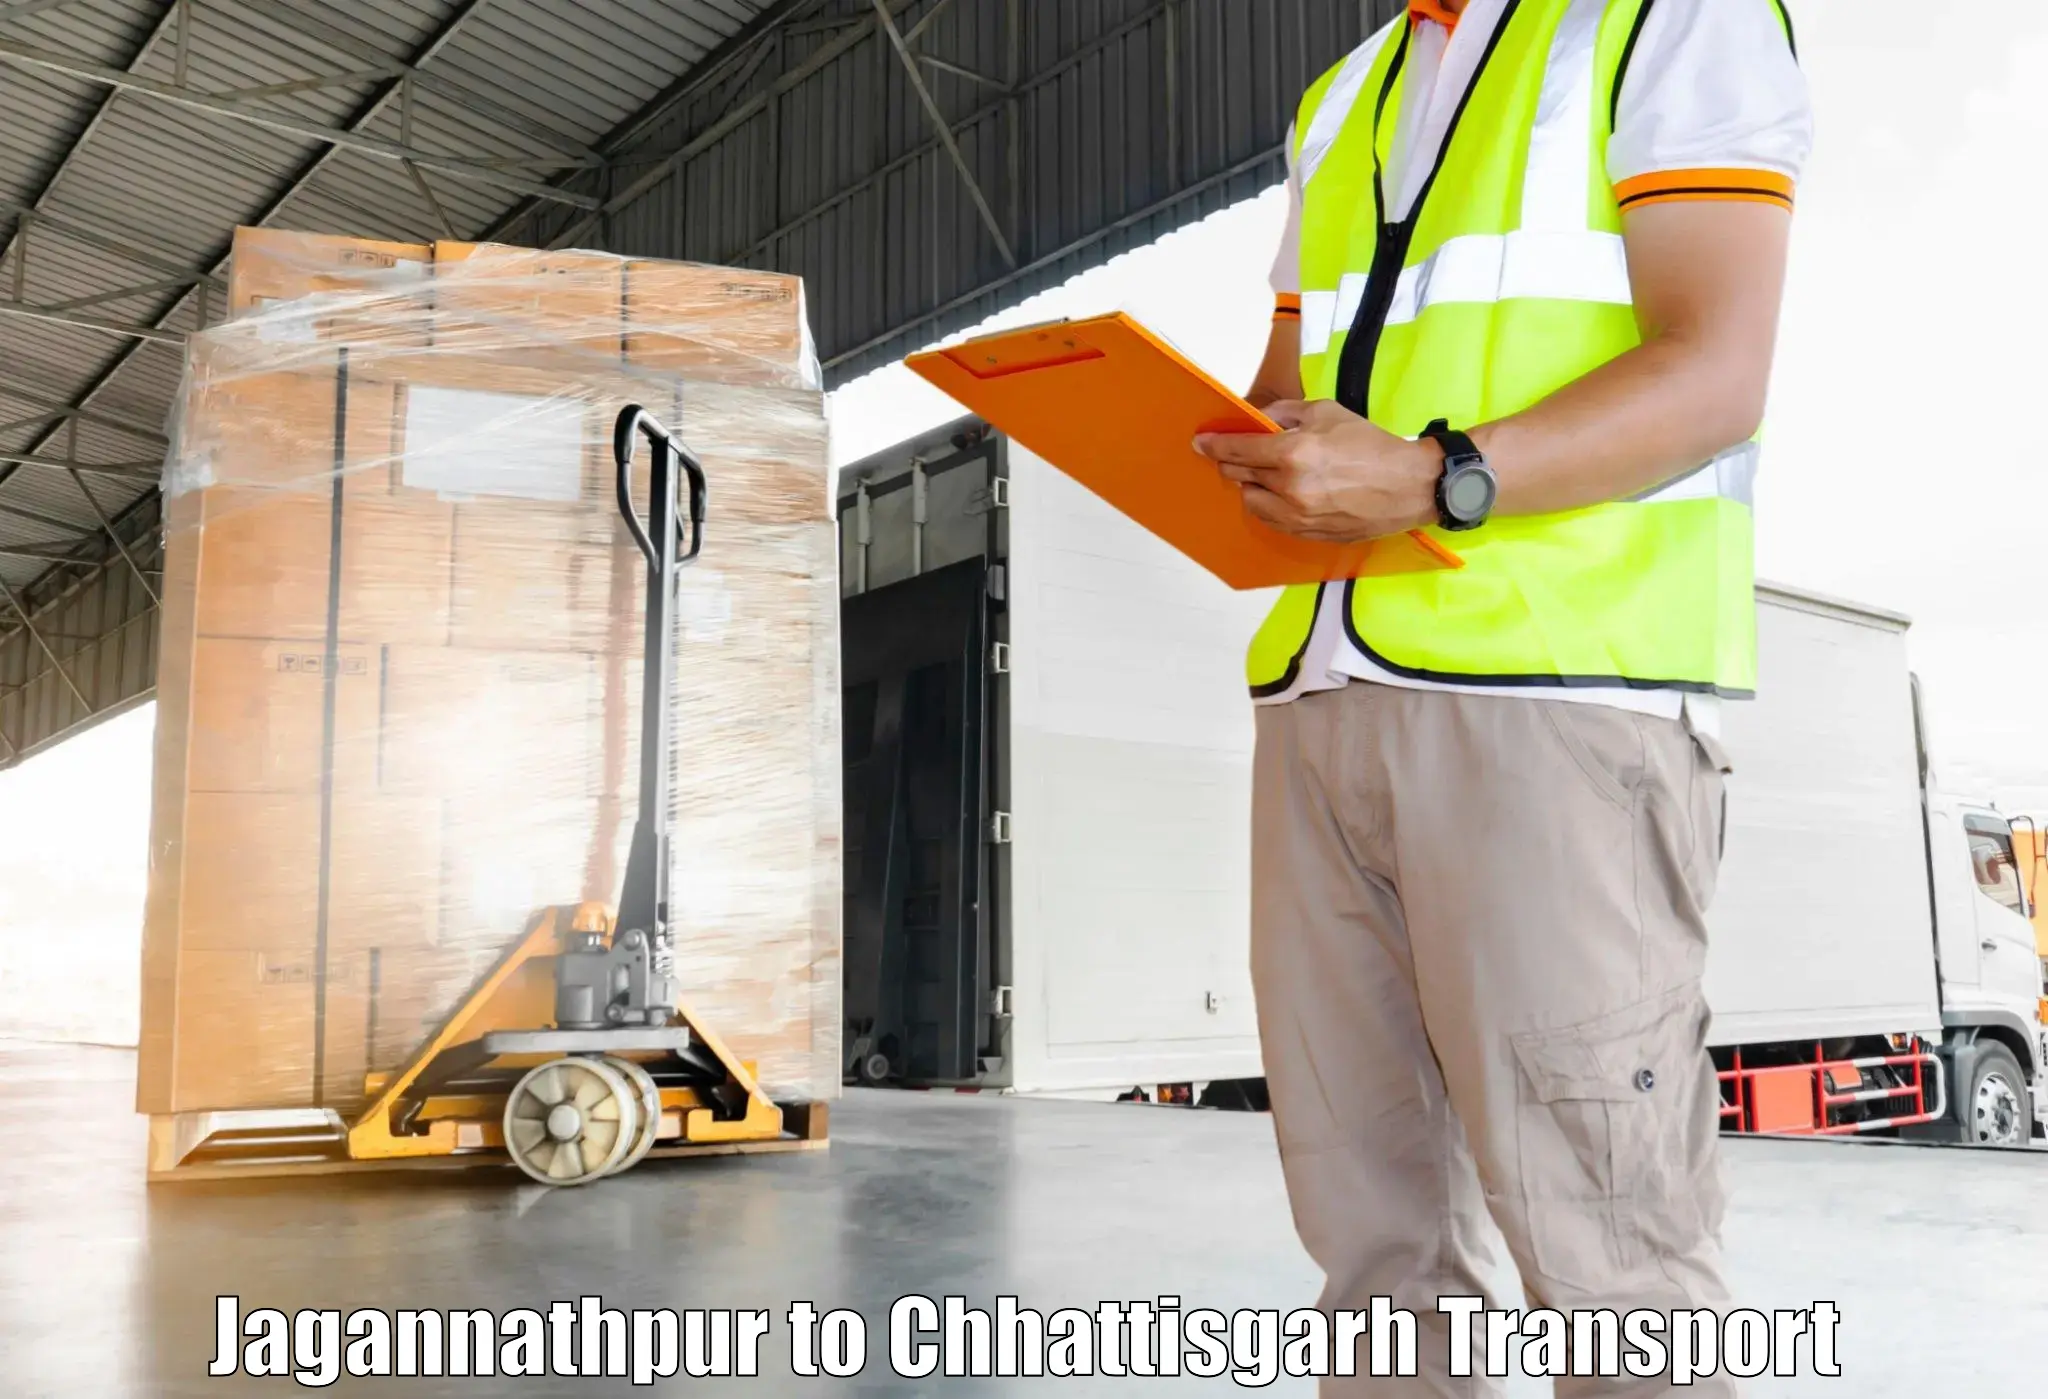 Furniture transport service in Jagannathpur to Durg